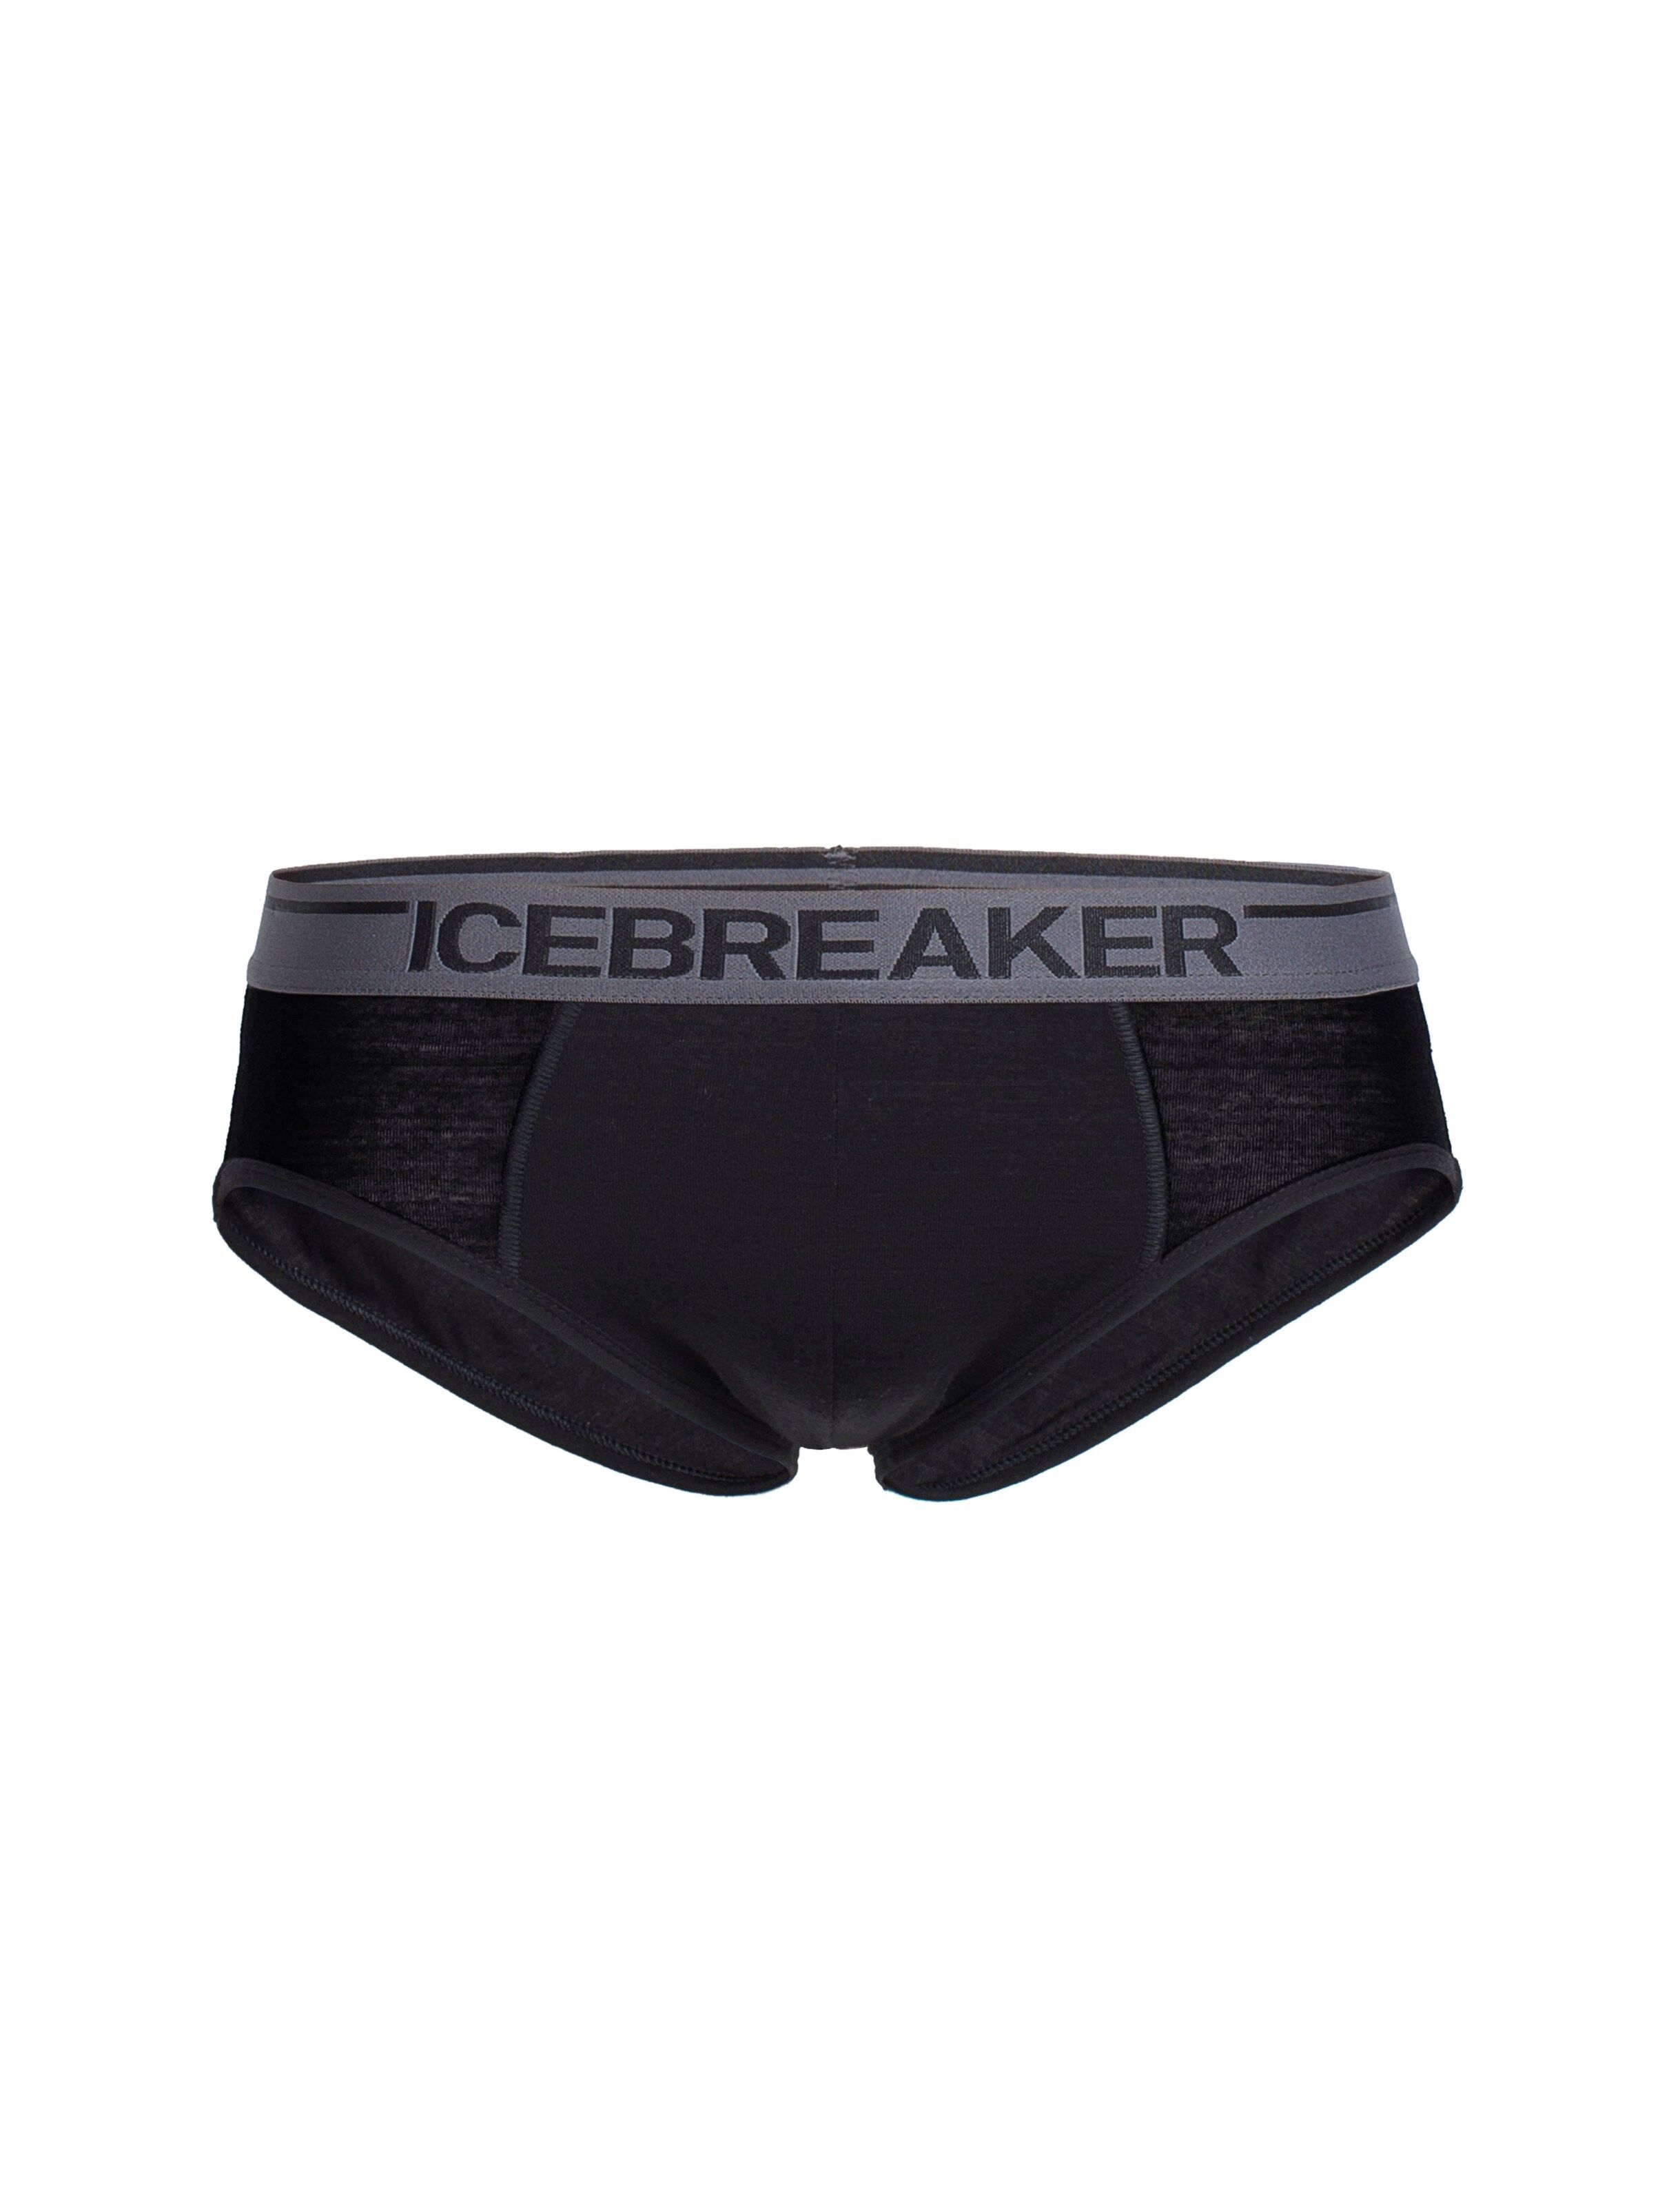 Icebreaker Anatomica Briefs, undertøy herre Black 103031001 XL 2019